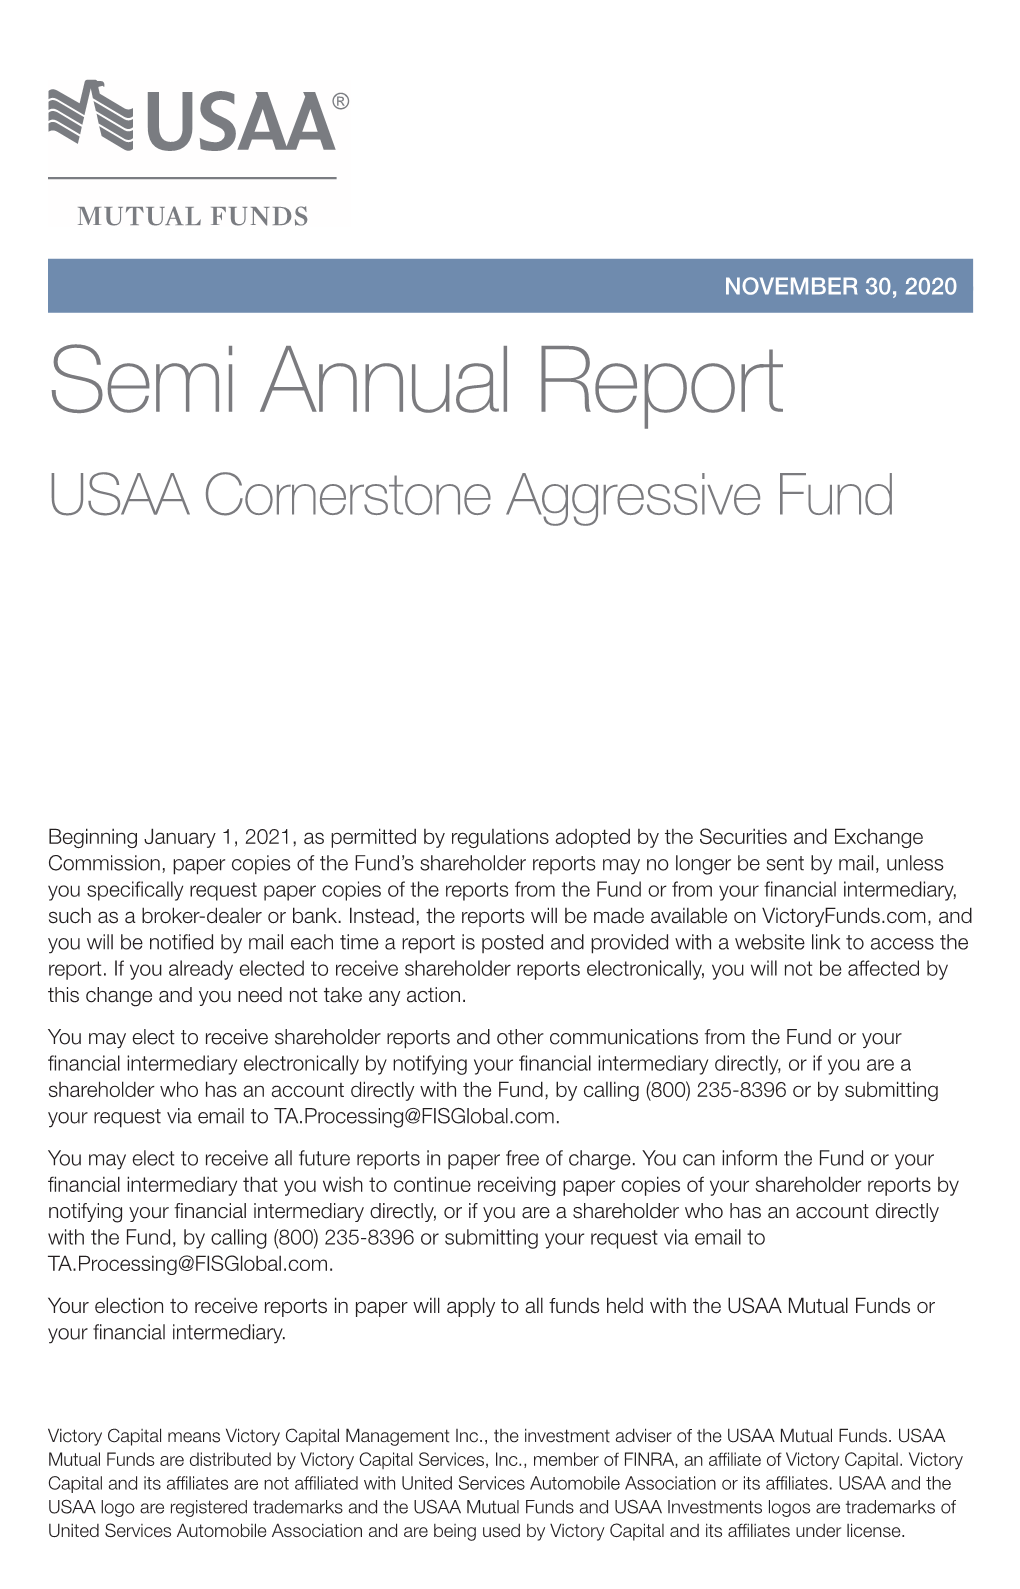 Semi Annual Report USAA Cornerstone Aggressive Fund